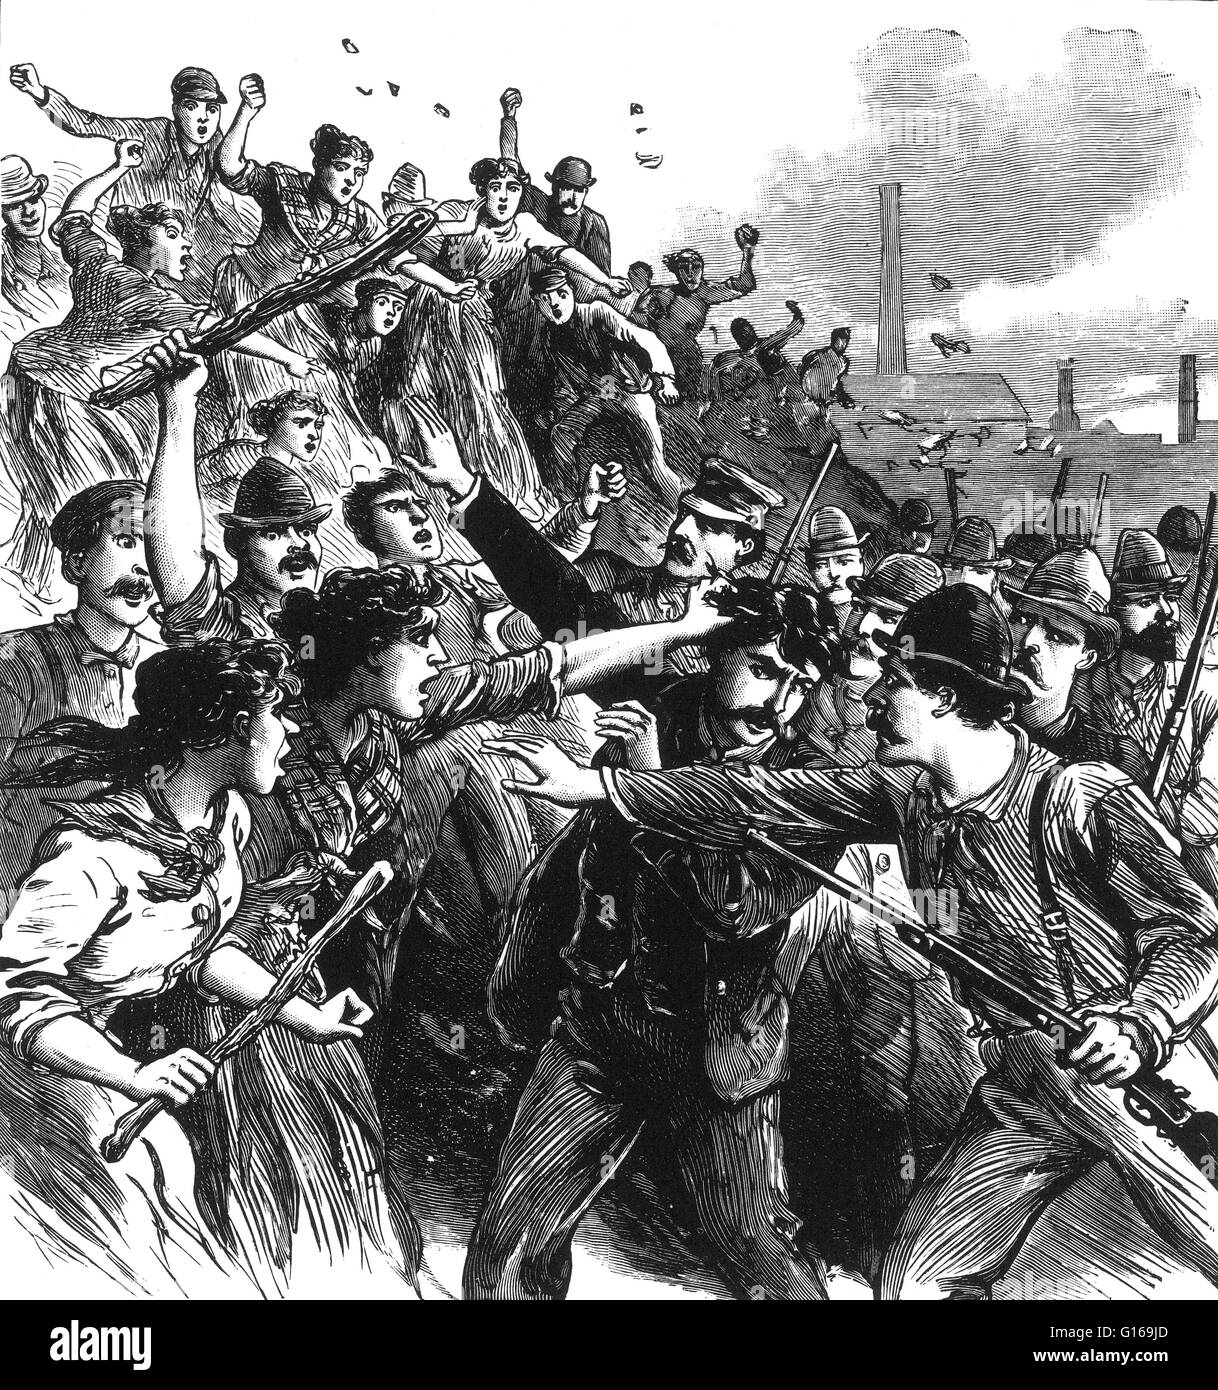 Homestead-Streik war ein industrieller Aussperrung und Streik, der am 30. Juni 1892, begann ihren Höhepunkt in einer Schlacht zwischen Streikenden und private Sicherheitskräfte am 6. Juli 1892. Die Schlacht war die zweitgrößte und eine der schwersten Auseinandersetzungen in US-labo Stockfoto